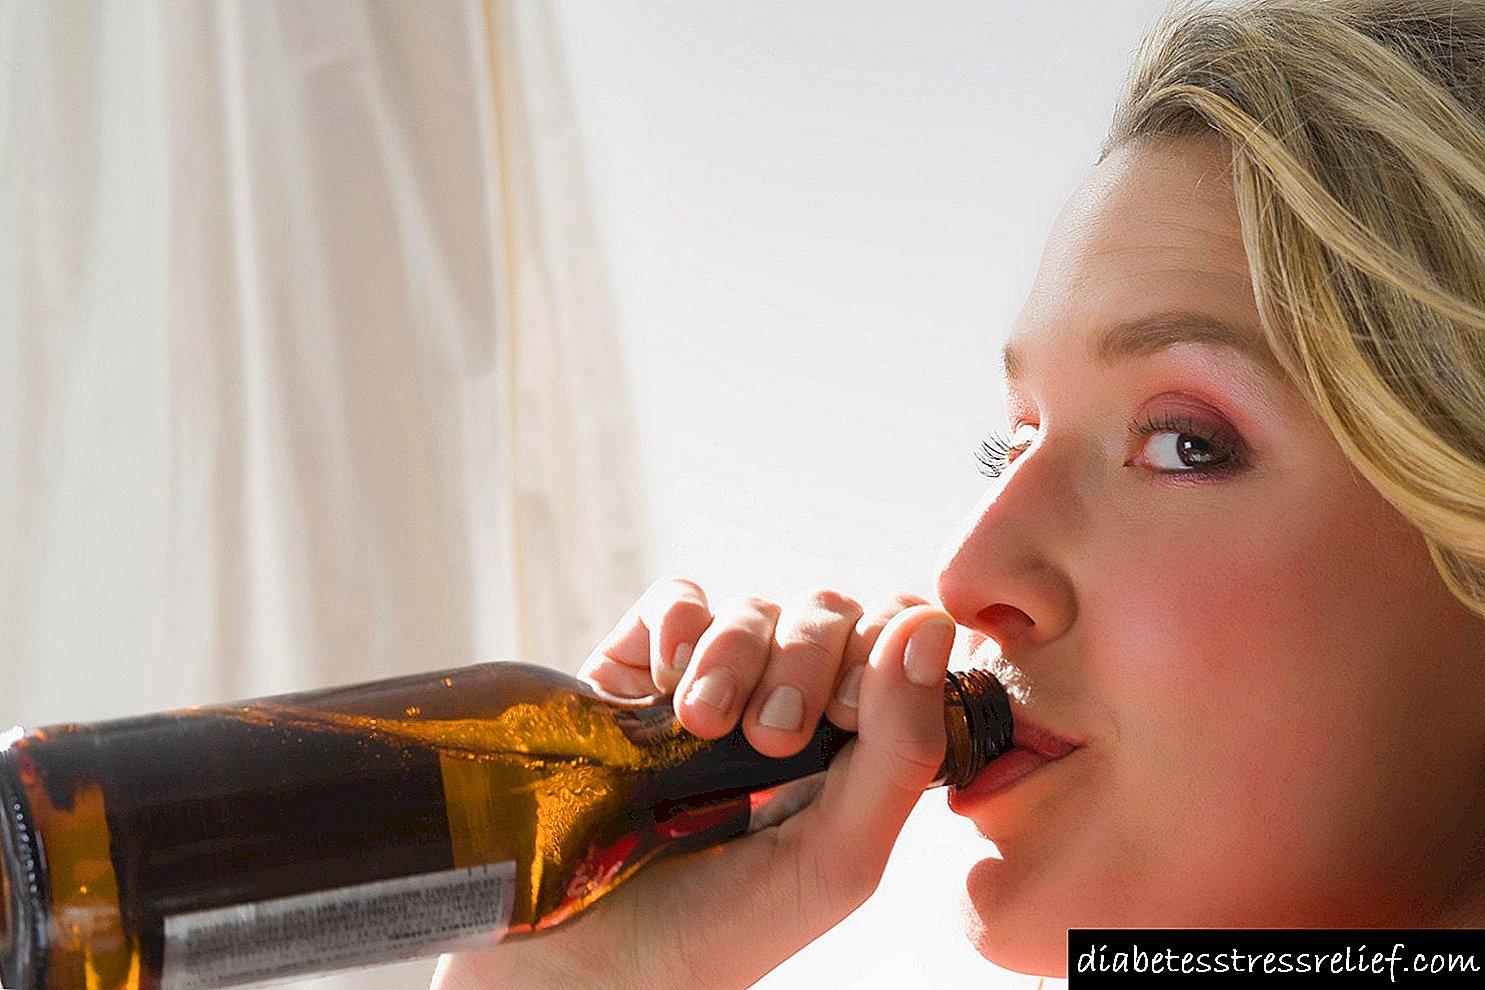 Kan bier met tipe 2-diabetes?